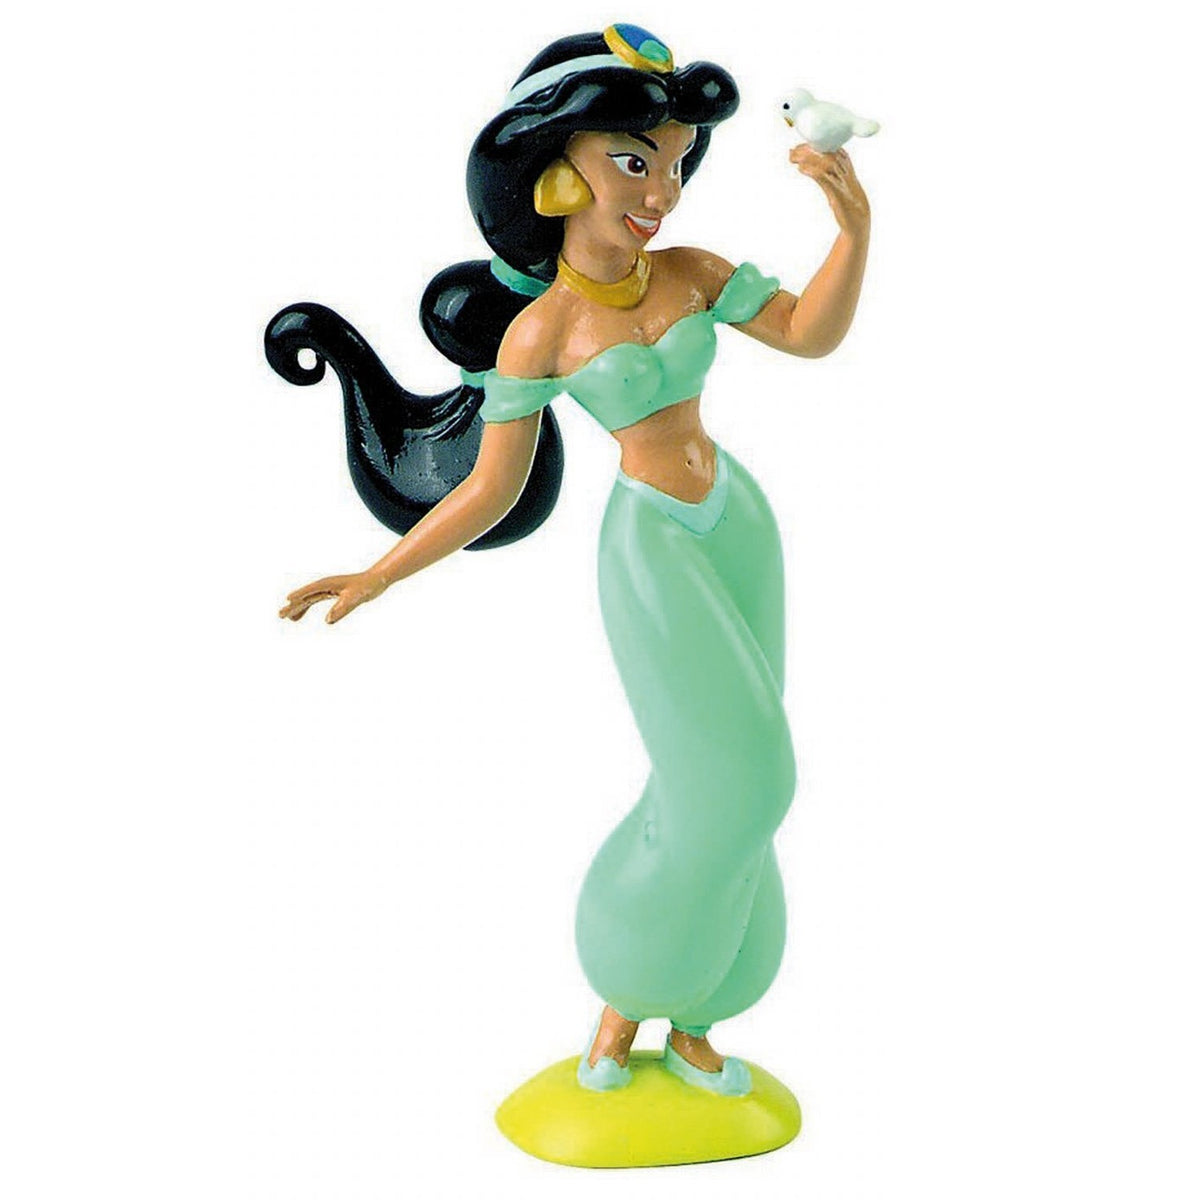 Riproduzione in miniatura del personaggio Walt Disney Aladdin Jasmine  Statuina da collezionare, in PVC dipinto a mano con pitture naturali –  partyeballoon